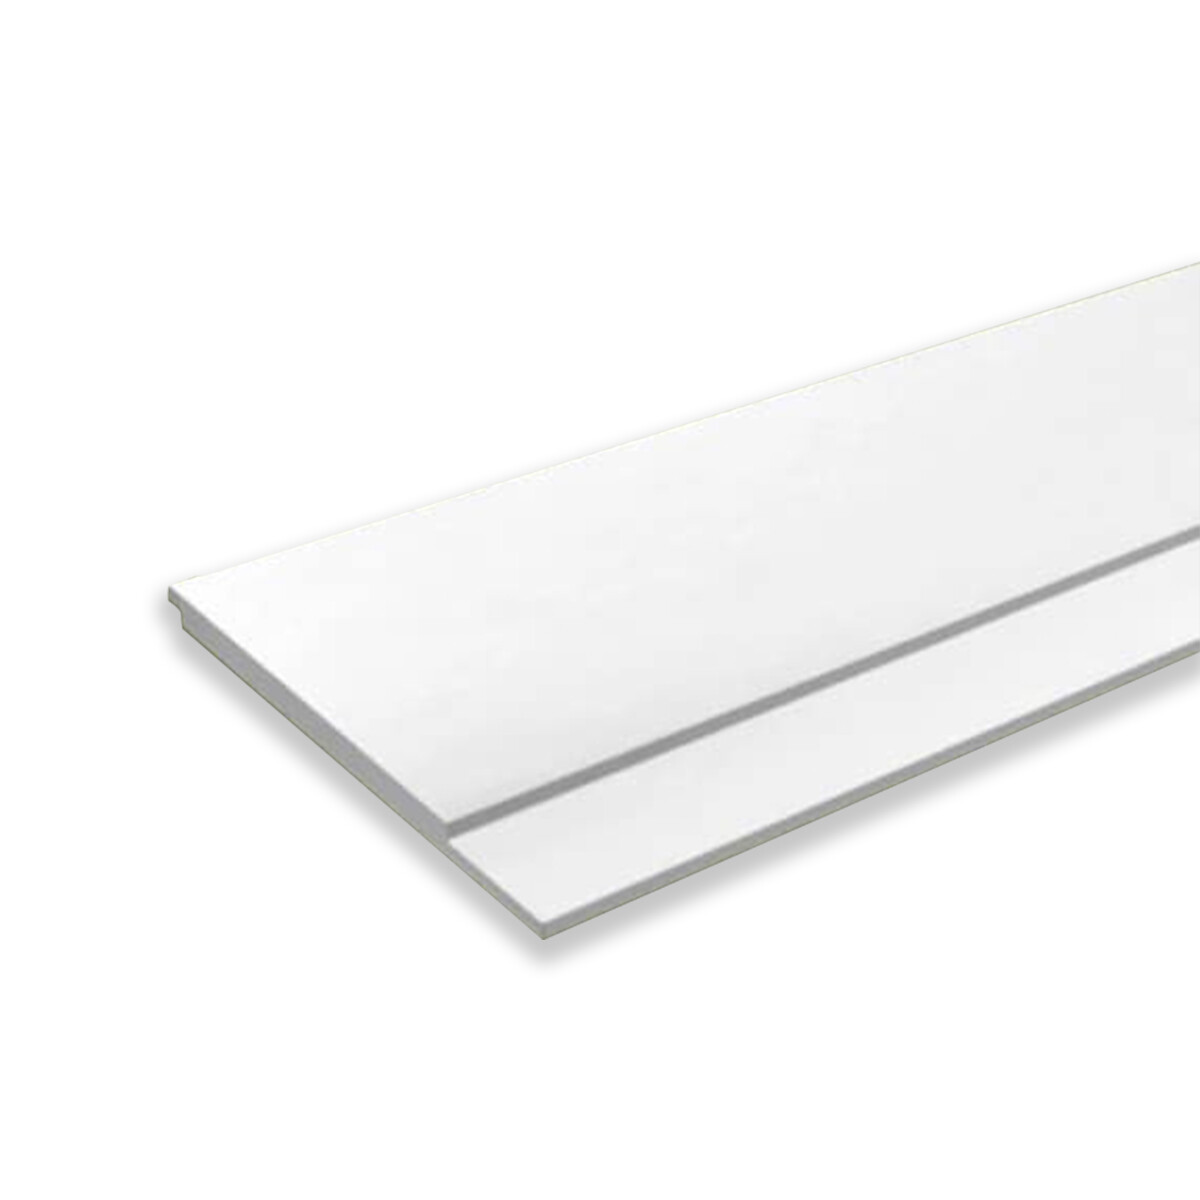 Revestimiento Linea Concept 9-125 en MDF prepintado Blanco 